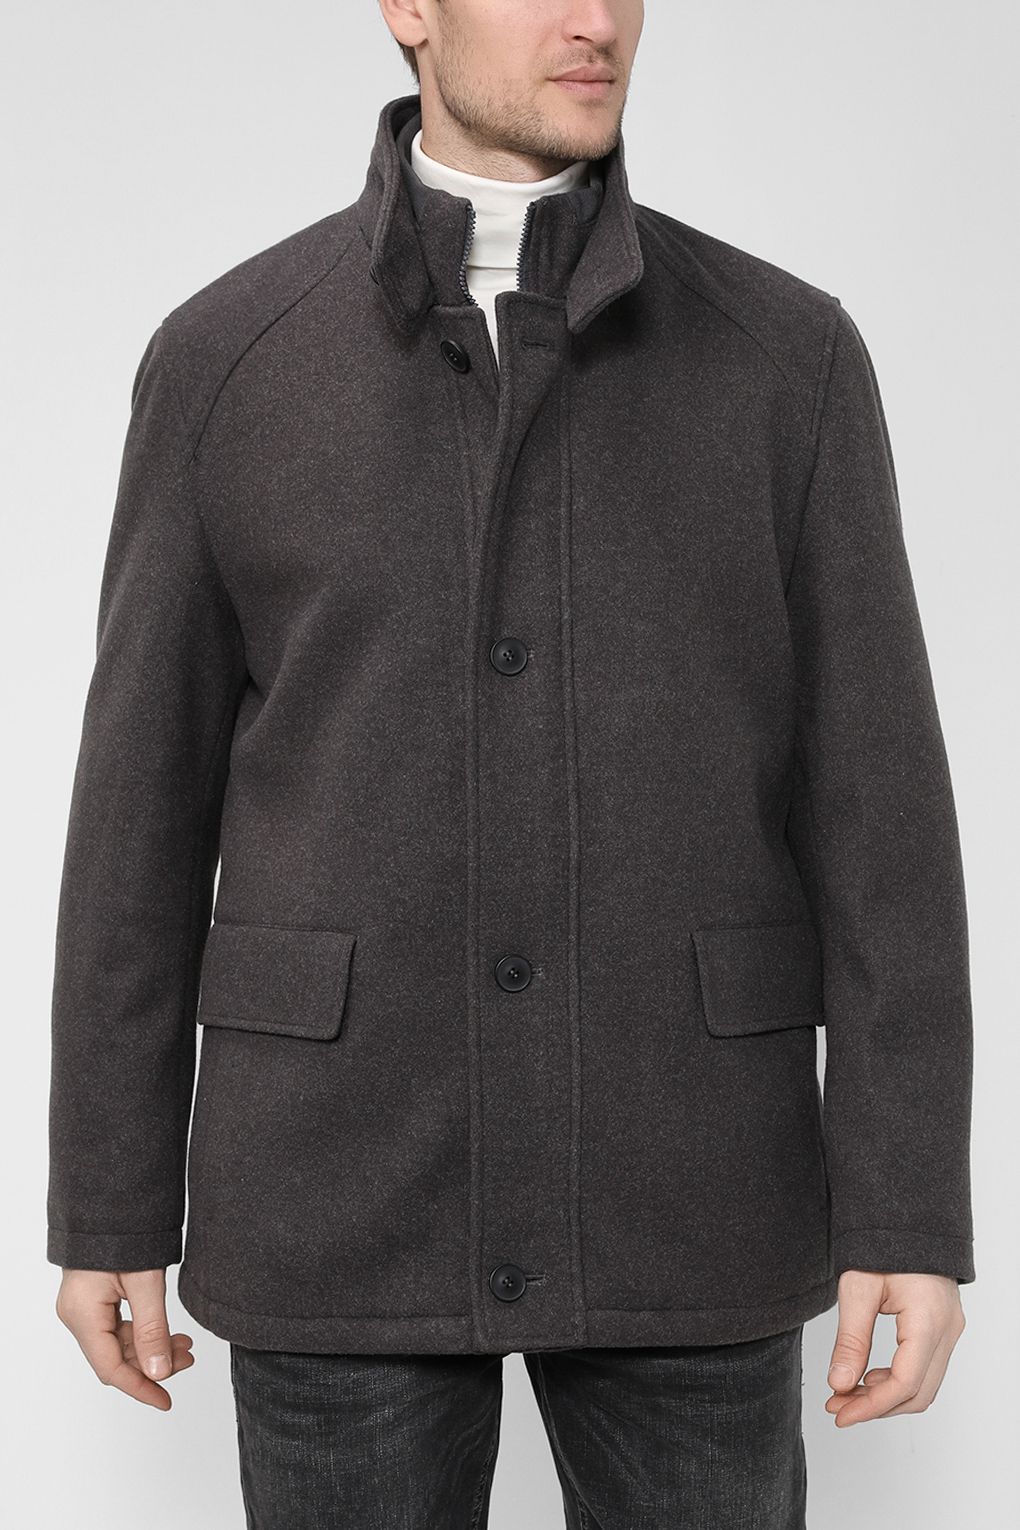 Пальто мужское Pierre Cardin C8 10030 0017 серое XL